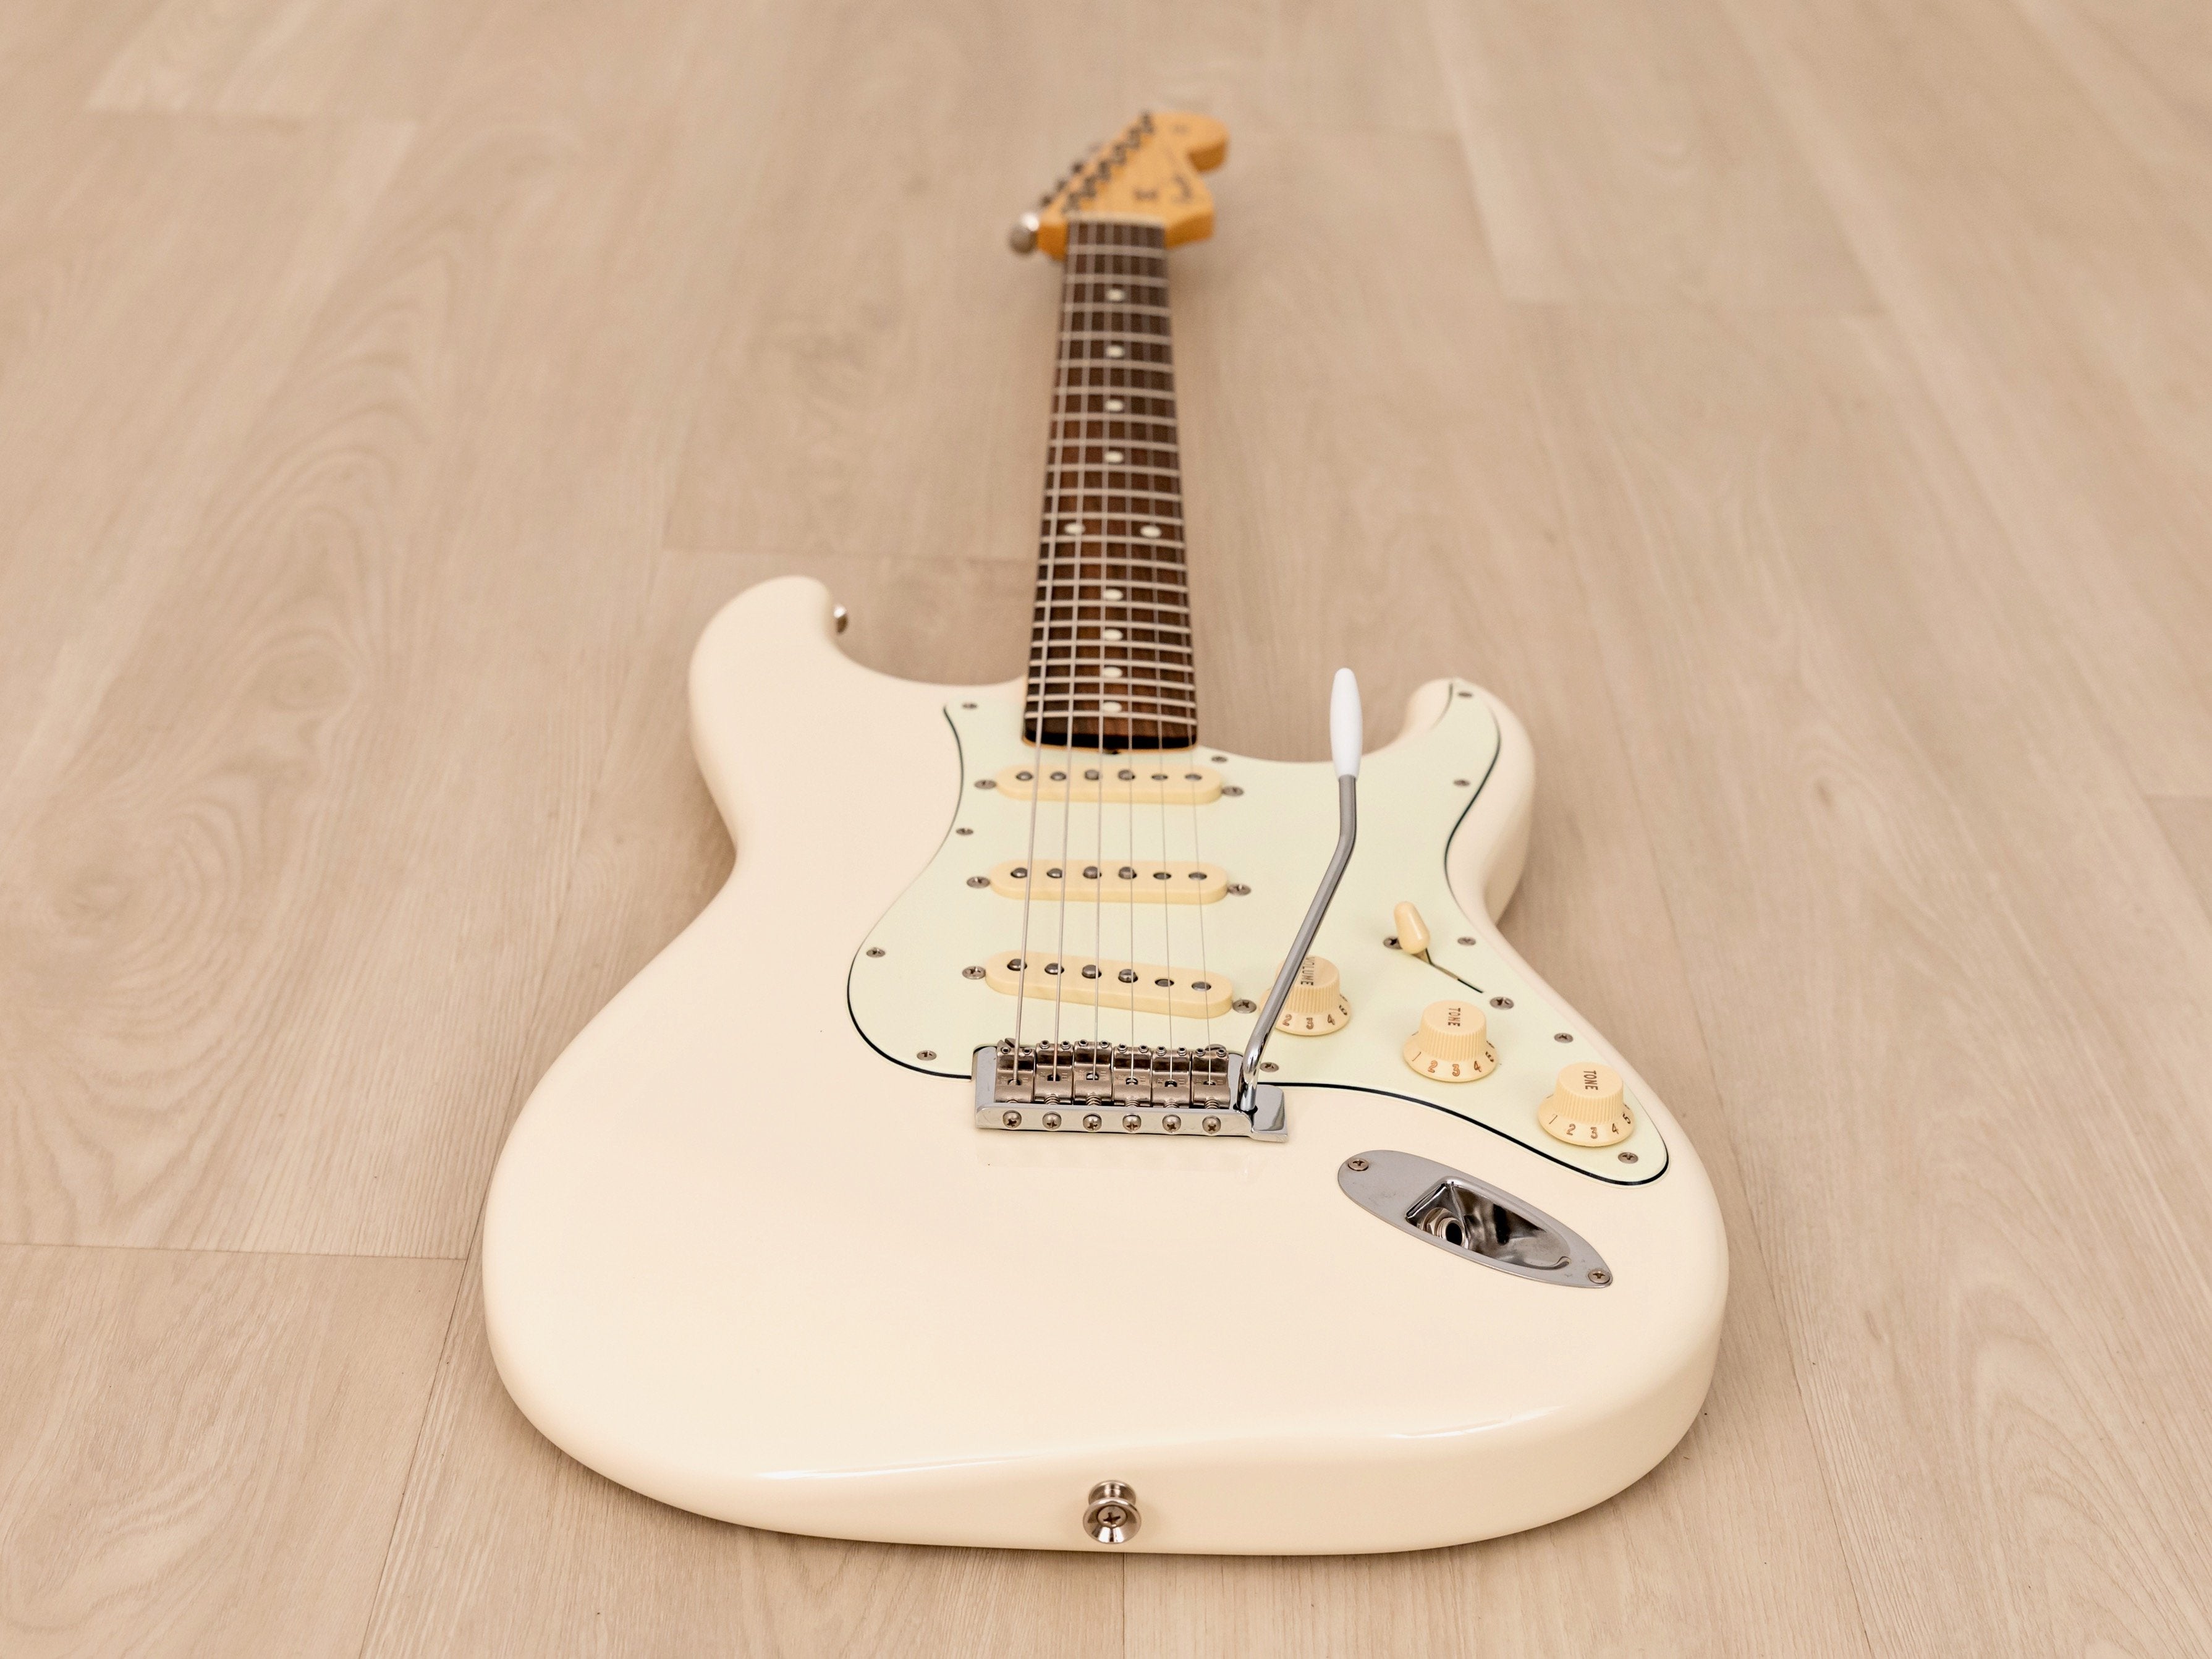 2019 Fender Hybrid 60s Stratocaster Olympic White w/ USA Pickups & Hangtags, Japan MIJ